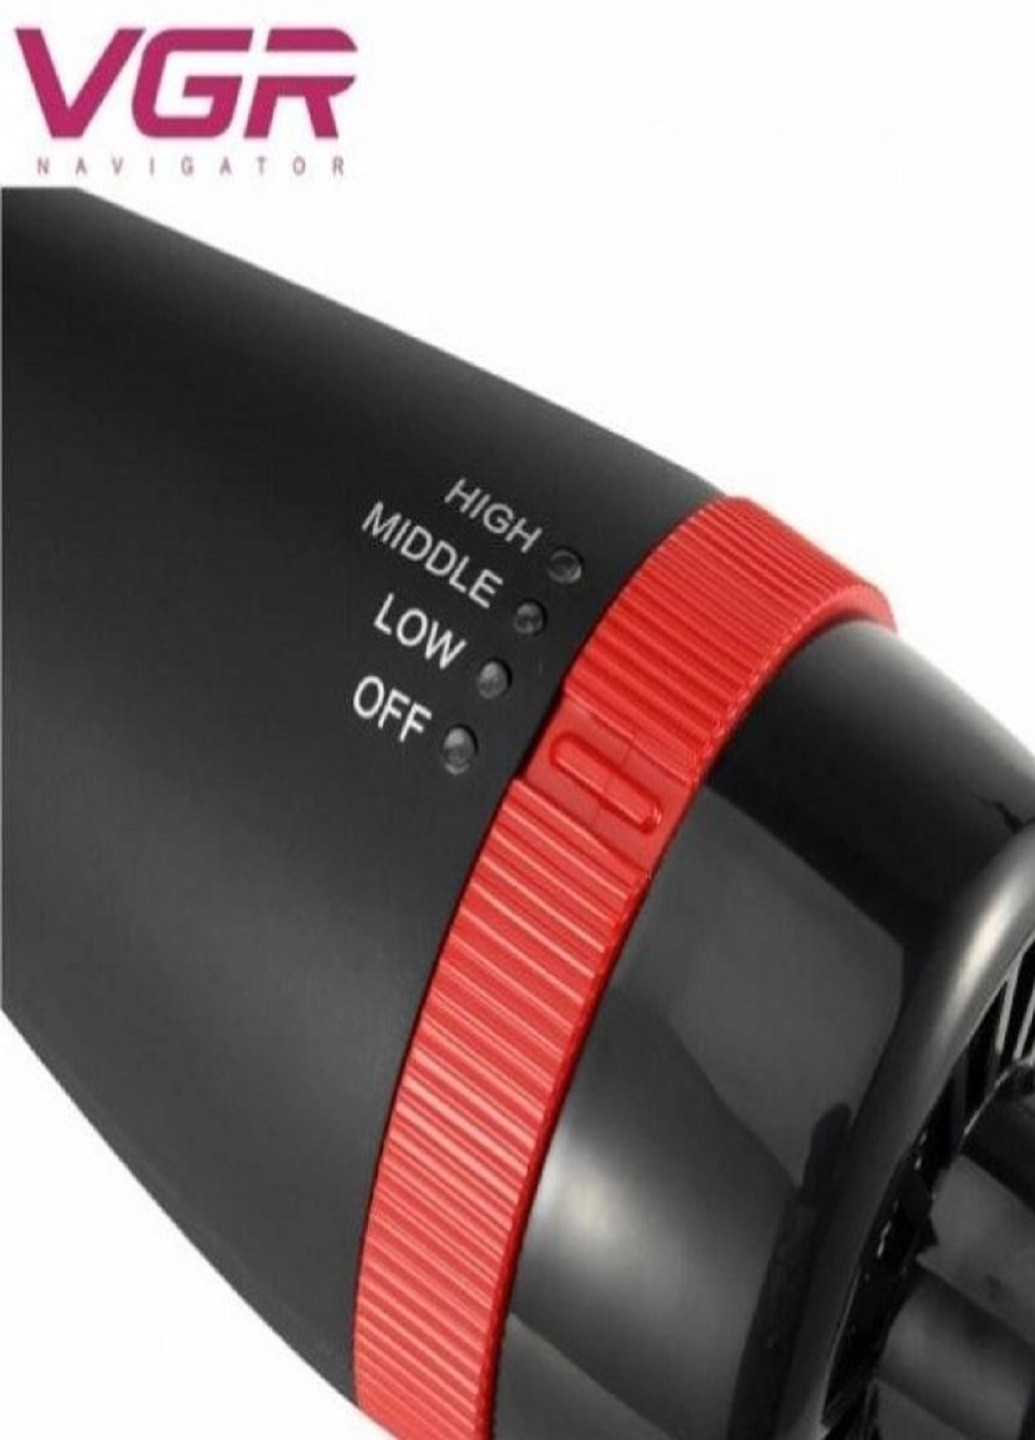 Фен расческа V-416 для укладки волос черный VGR (259504009)